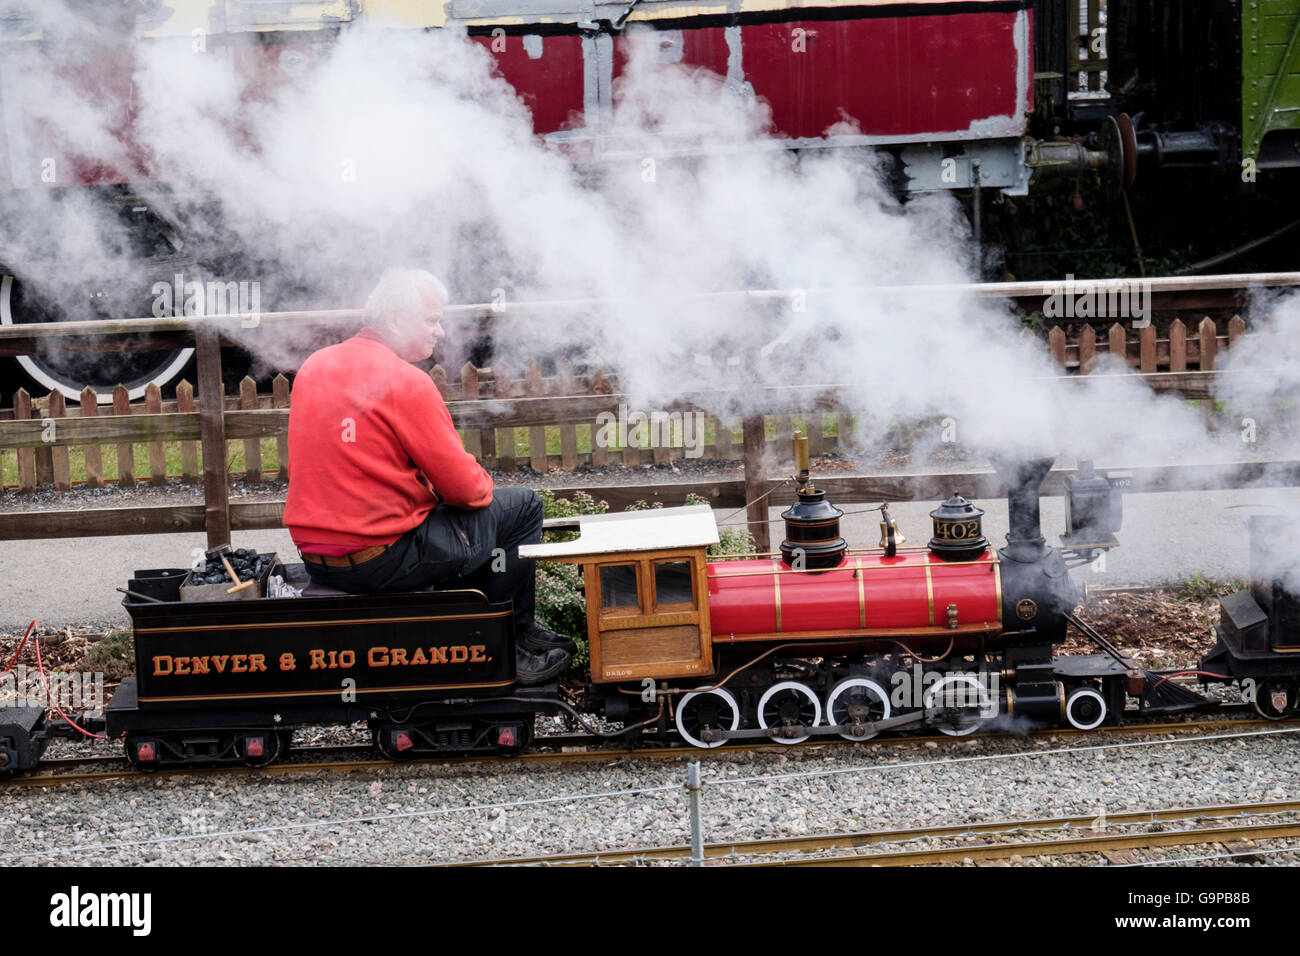 La conduite de l'homme de fer miniature moteur train à vapeur dans la vallée de Conwy Railway Museum. Betws-Y-coed, au nord du Pays de Galles, Royaume-Uni, Angleterre Banque D'Images